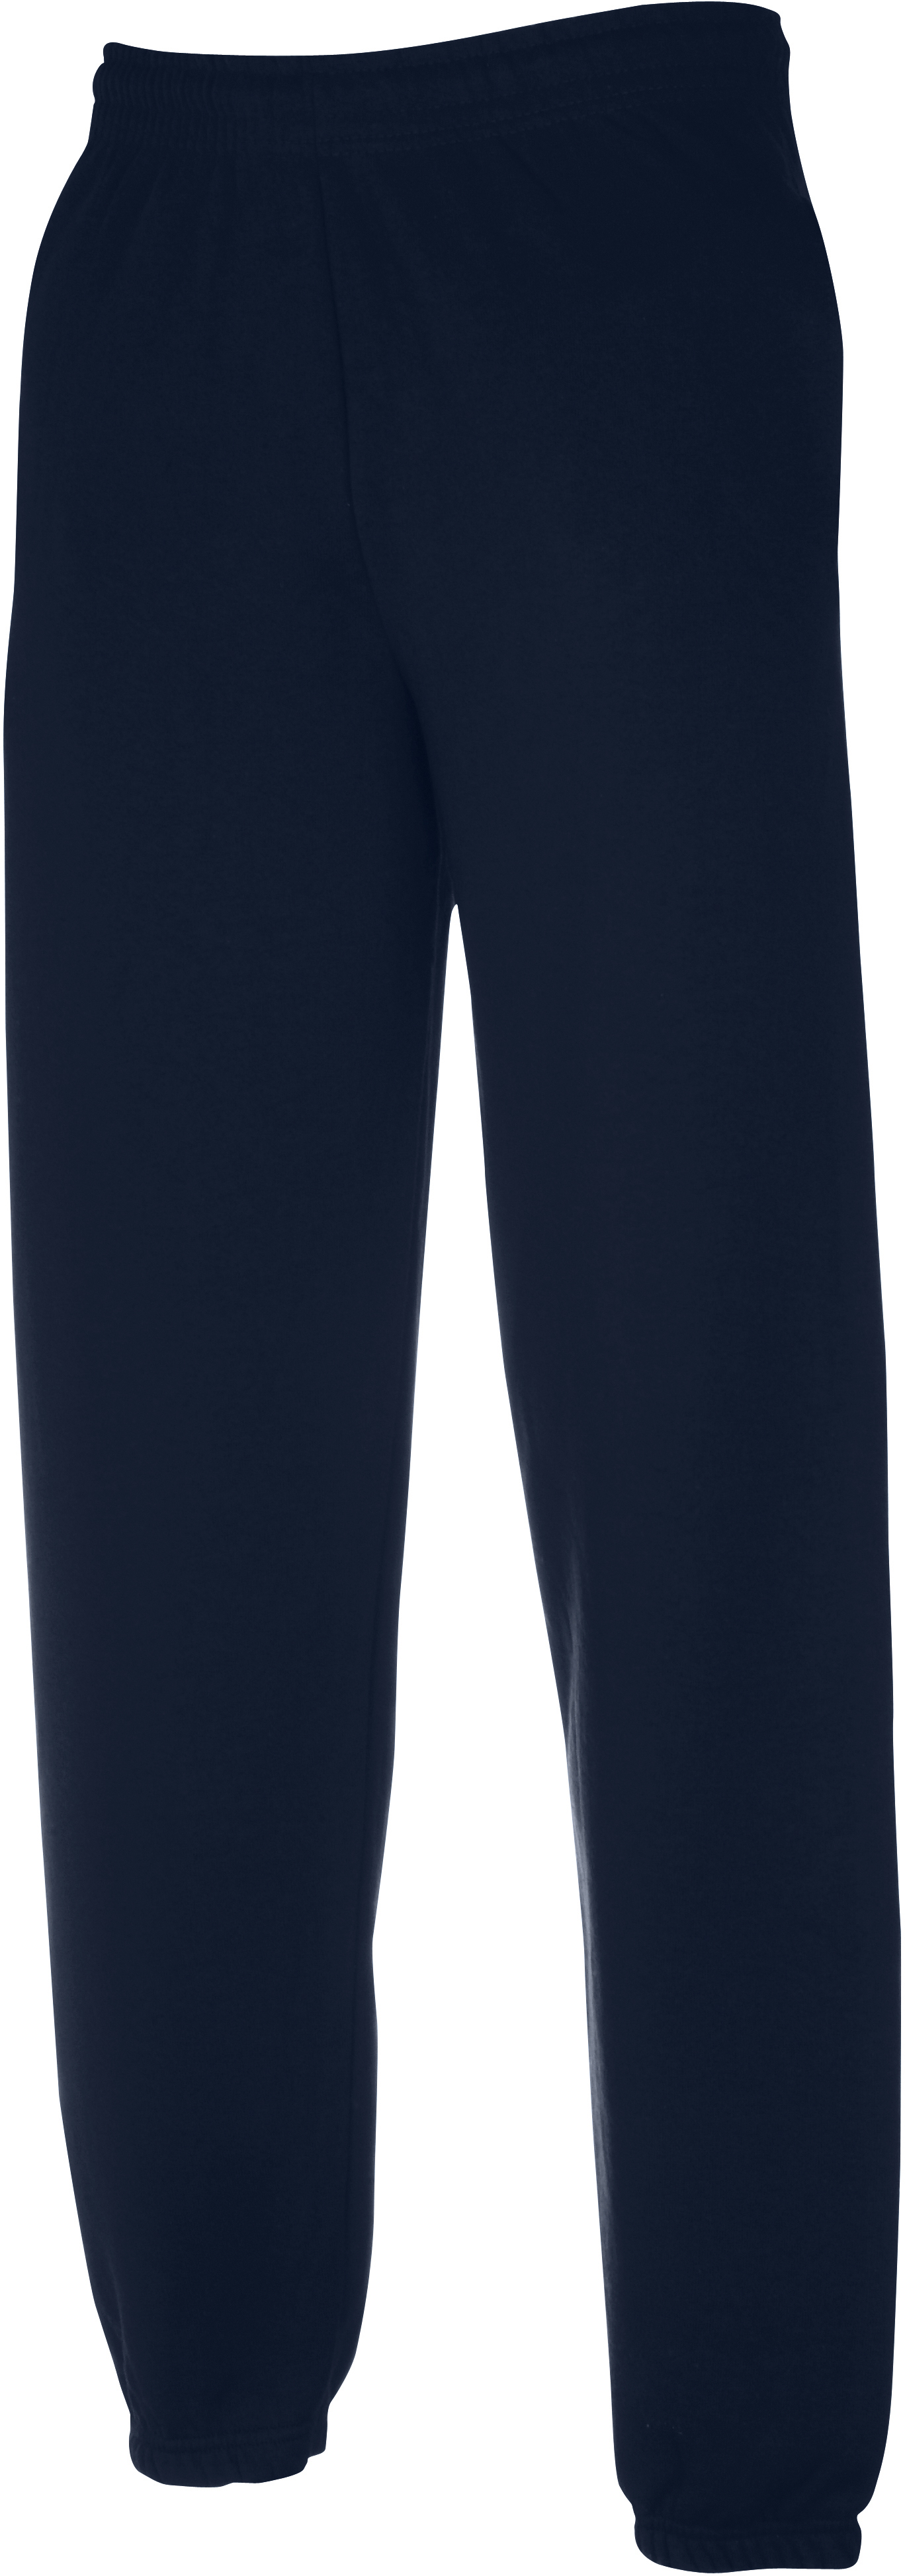 Pánské tepláky Classic Elasticated Cuff Jog Pants 64026 Barva: dark navy, Velikost: 3XL